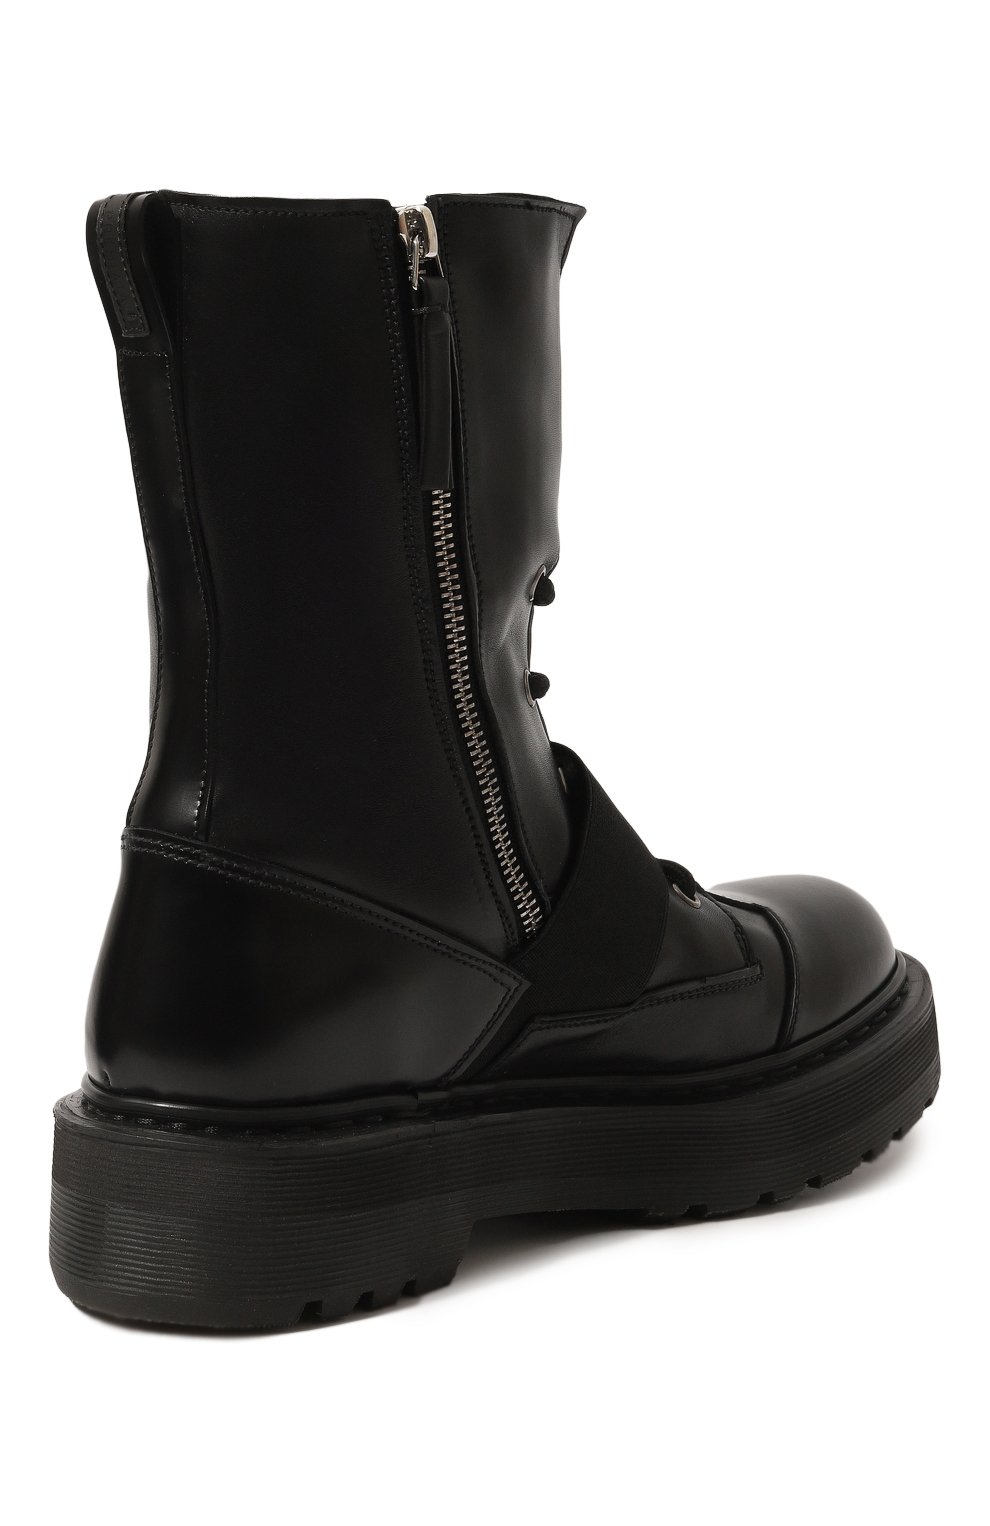 Кожаные ботинки Premiata M4970C/VARIANTE 3, цвет чёрный, размер 37 M4970C/VARIANTE 3 - фото 5